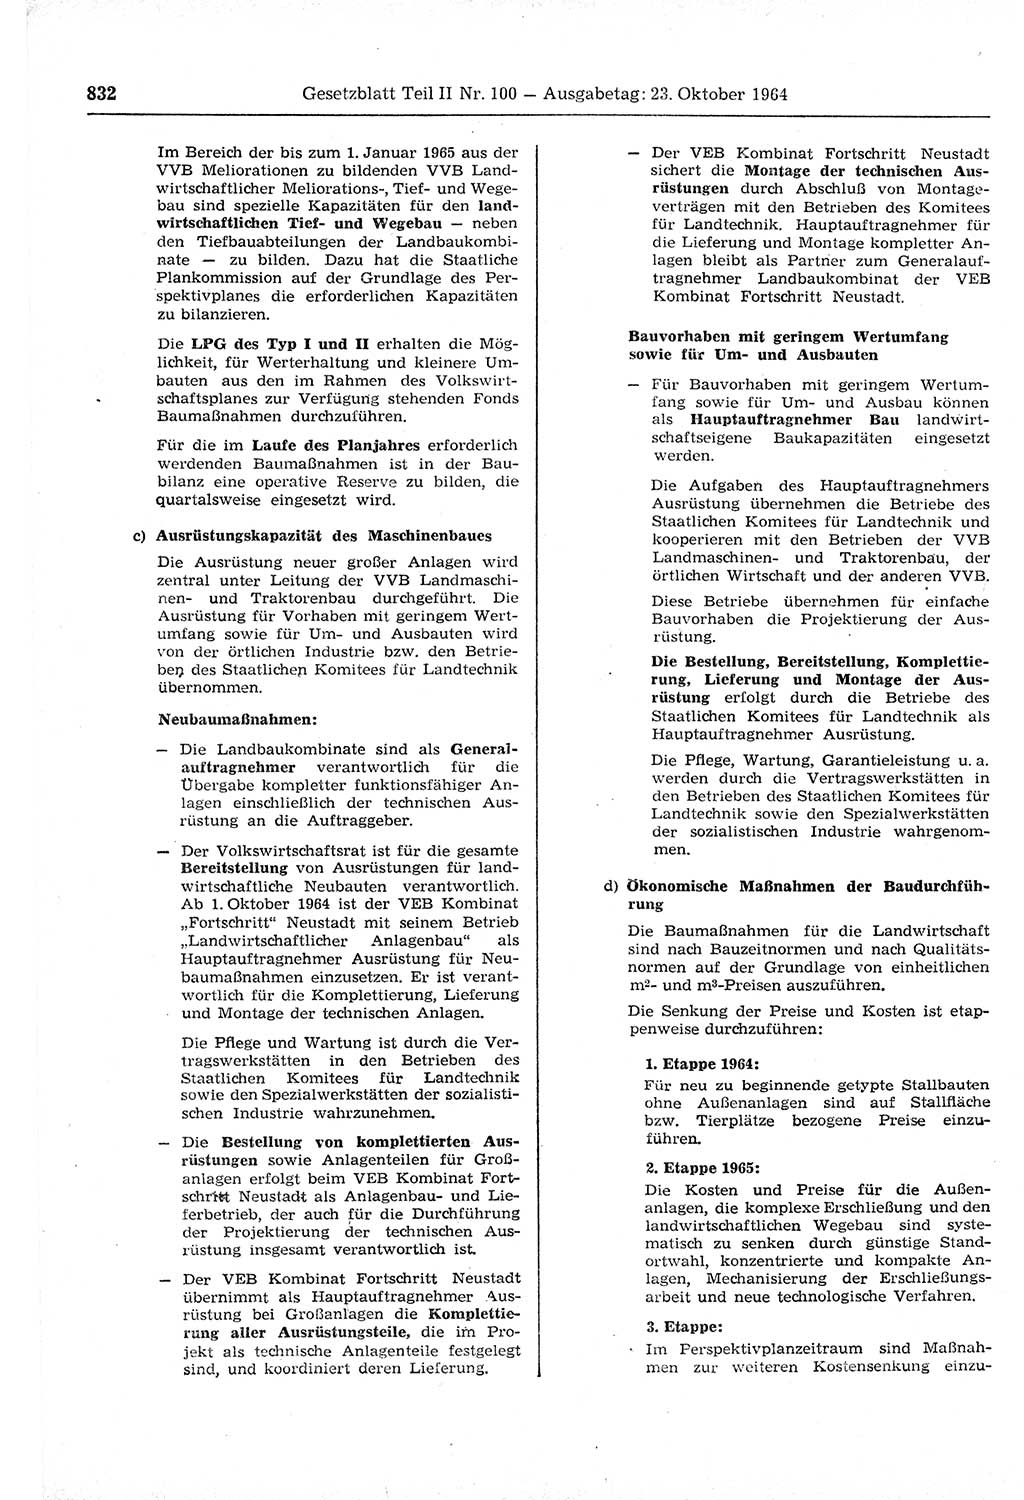 Gesetzblatt (GBl.) der Deutschen Demokratischen Republik (DDR) Teil ⅠⅠ 1964, Seite 832 (GBl. DDR ⅠⅠ 1964, S. 832)